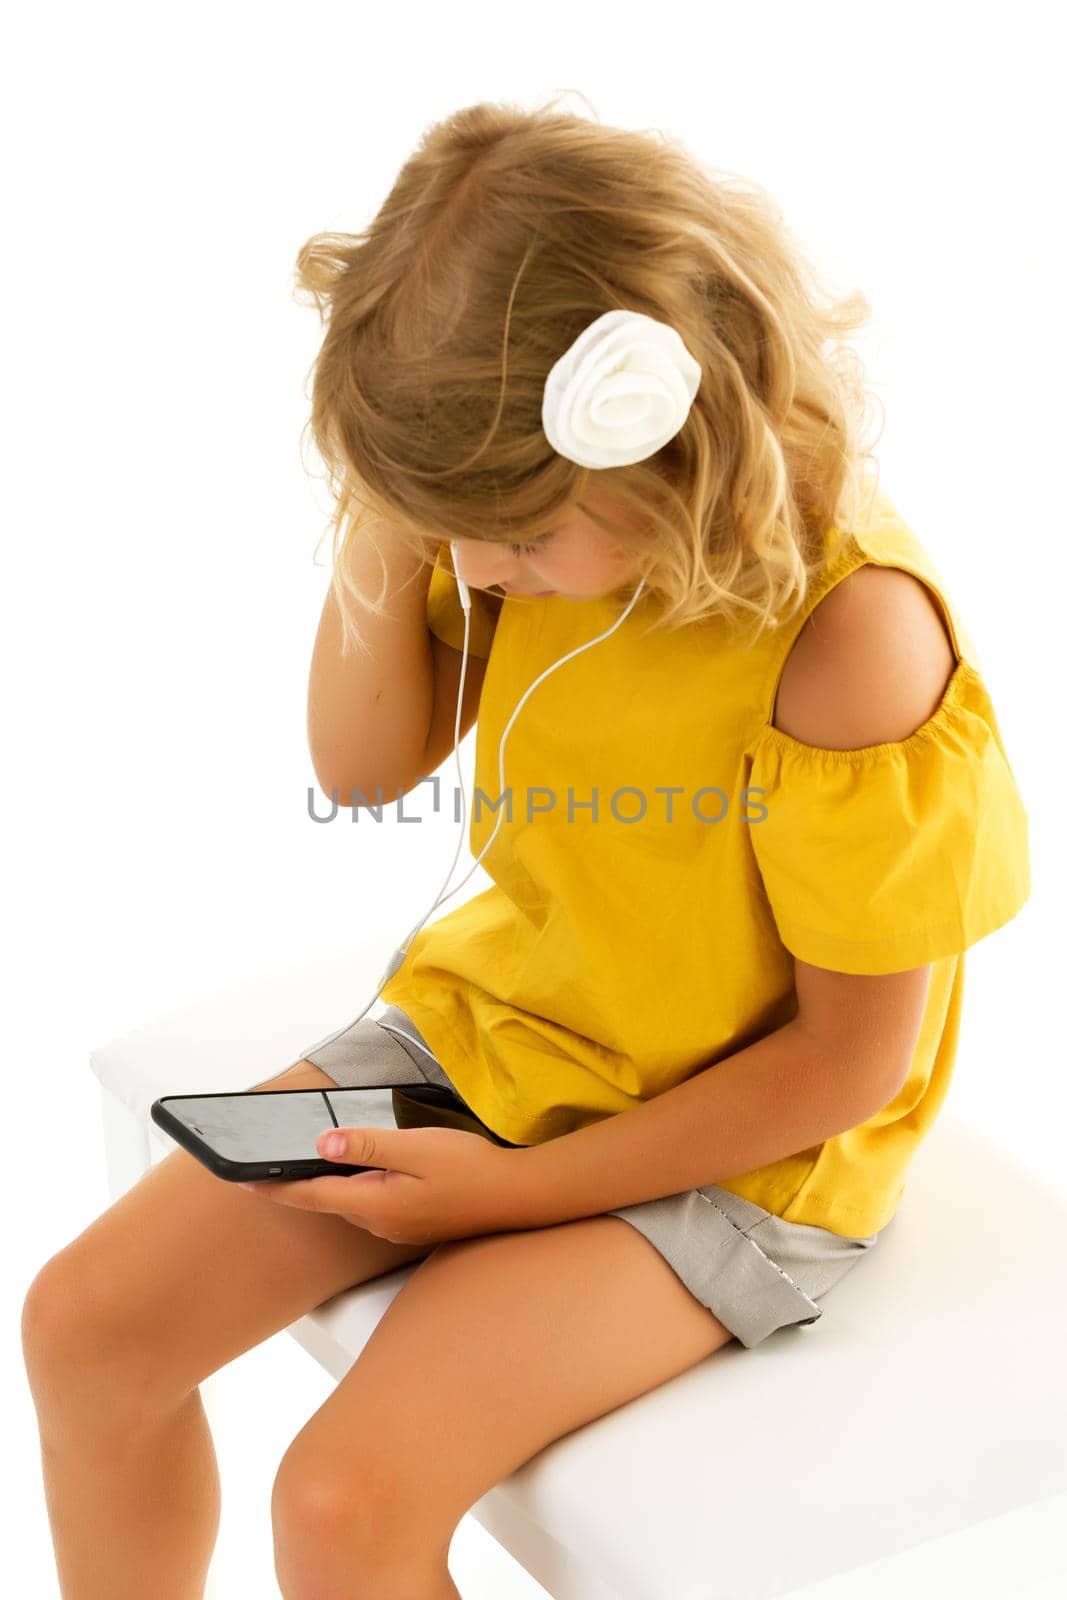 Cute little kid wearing headphones listening to music. Kid listening to music. Music recommended based on initial interest. by kolesnikov_studio